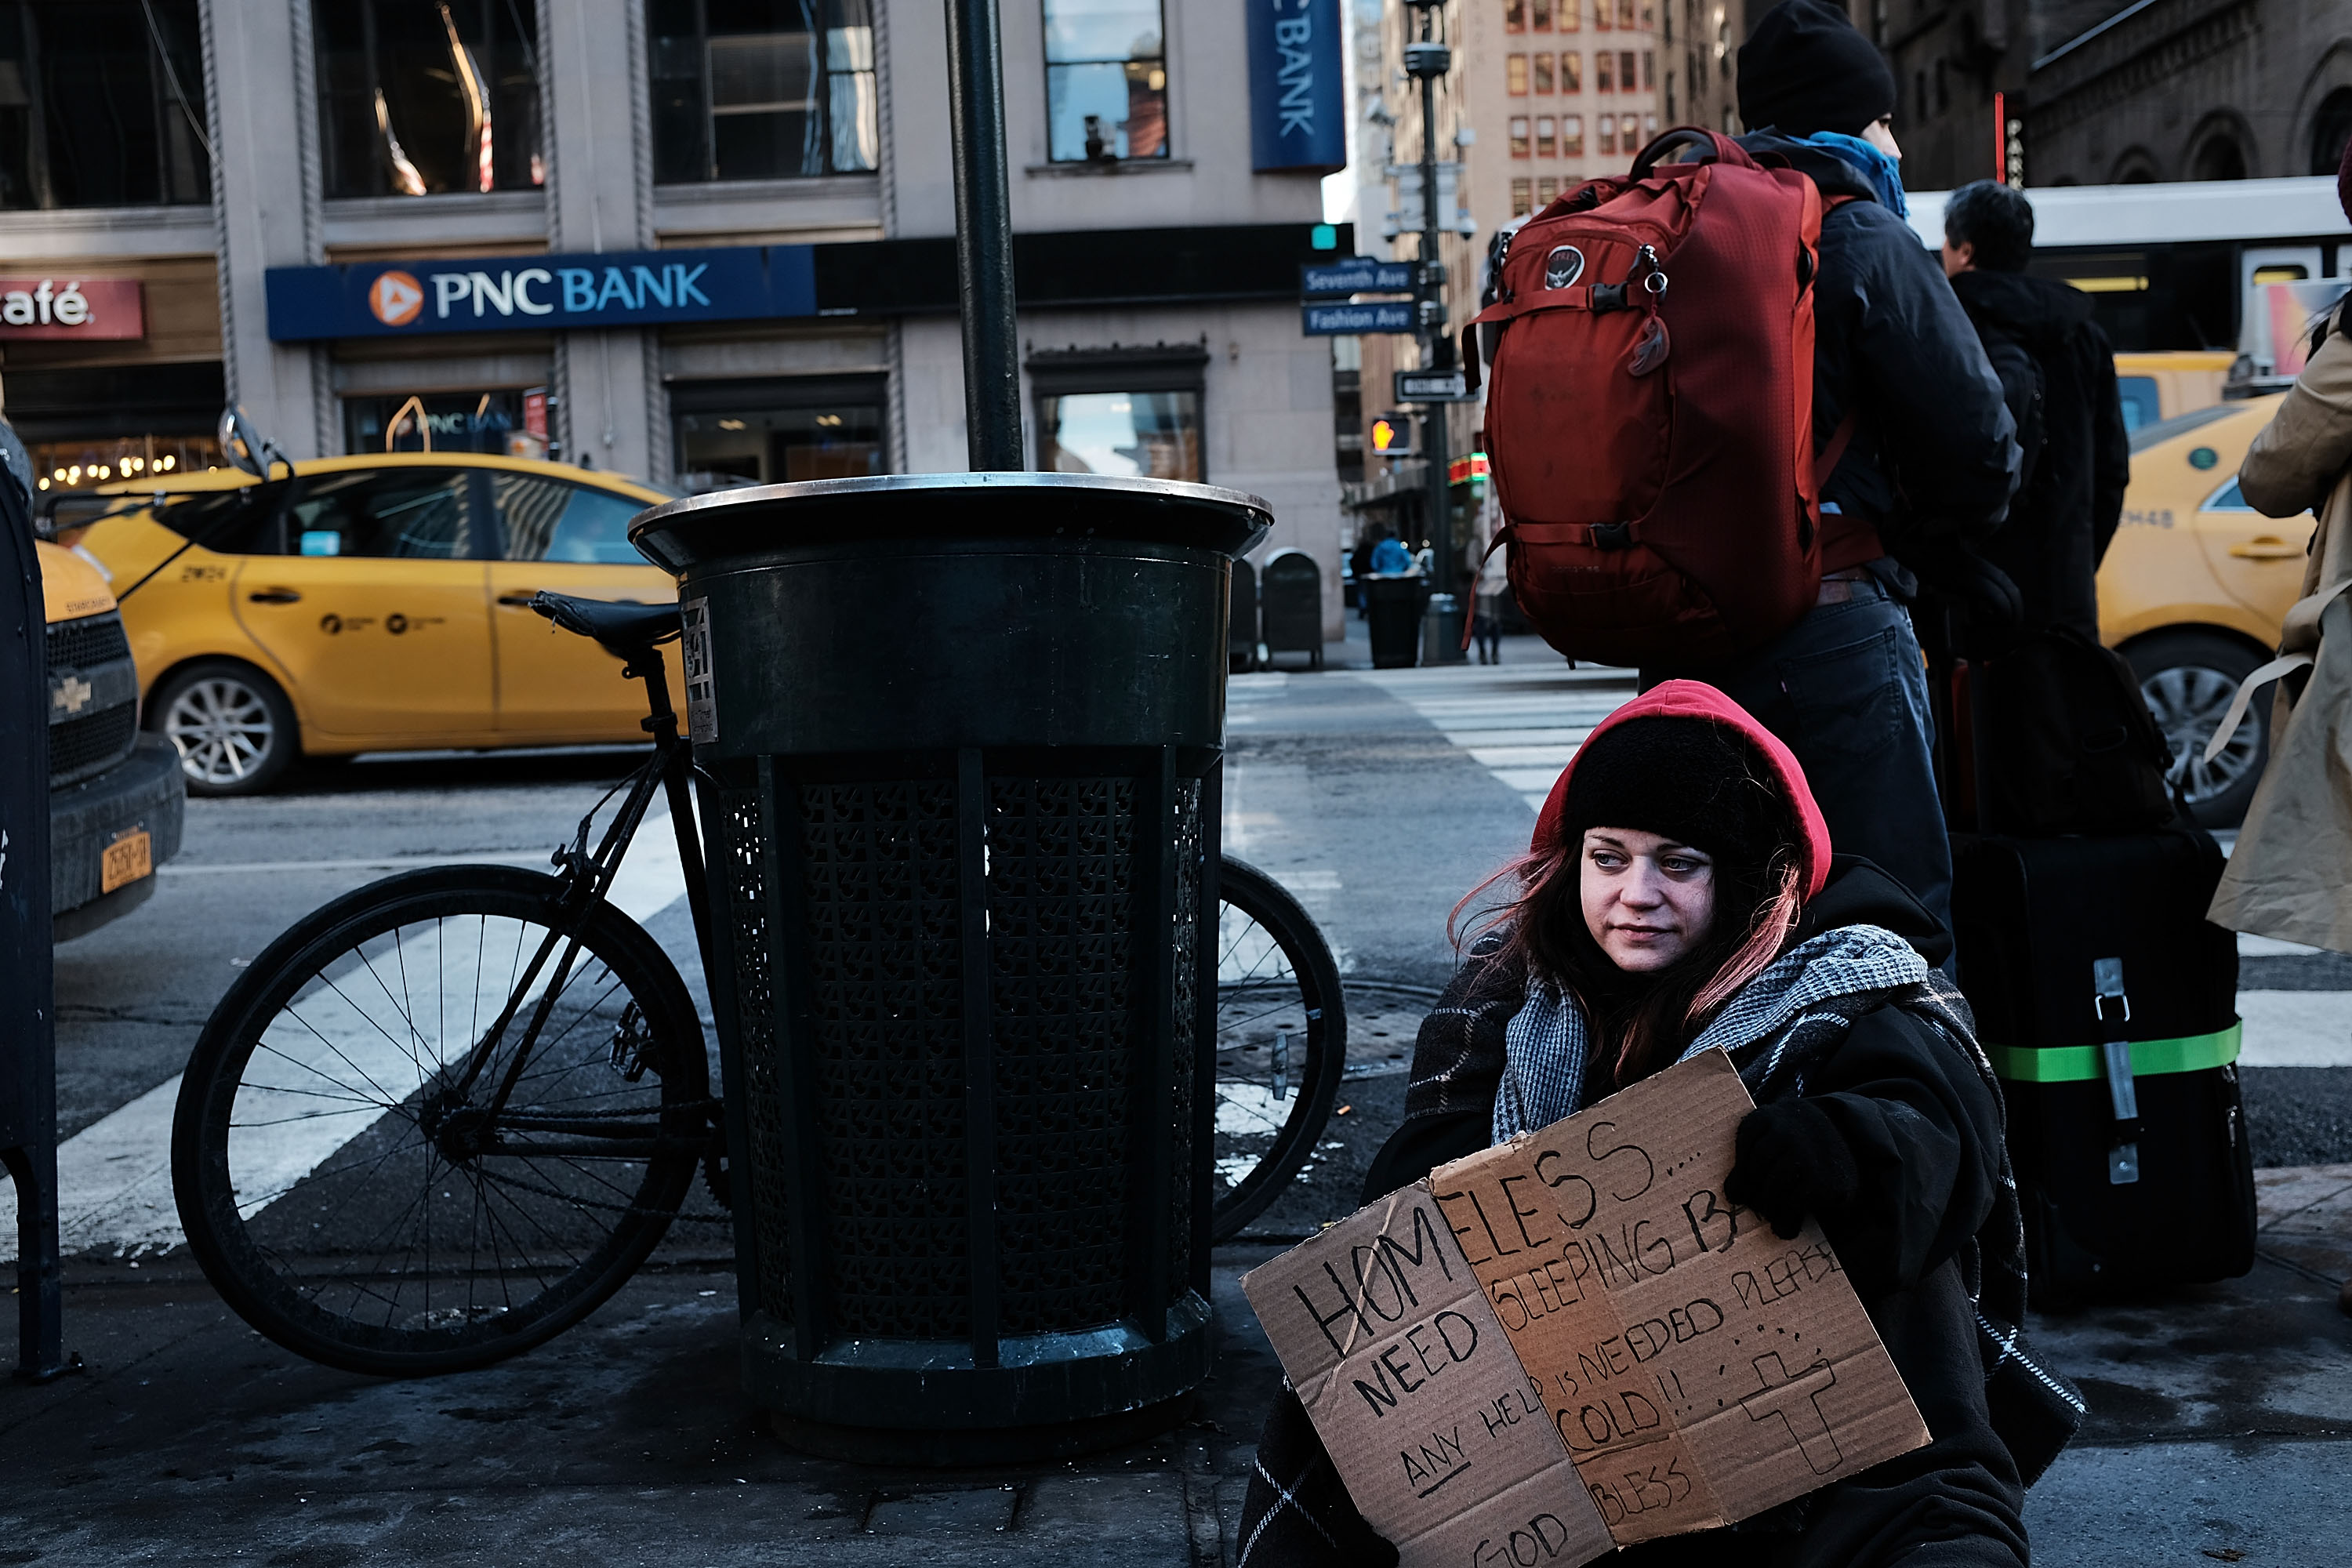 Pobreza-pobre-nueva-york-estados-unidos-america-neoliberalismo-economia-foto-14-diciembre-2017